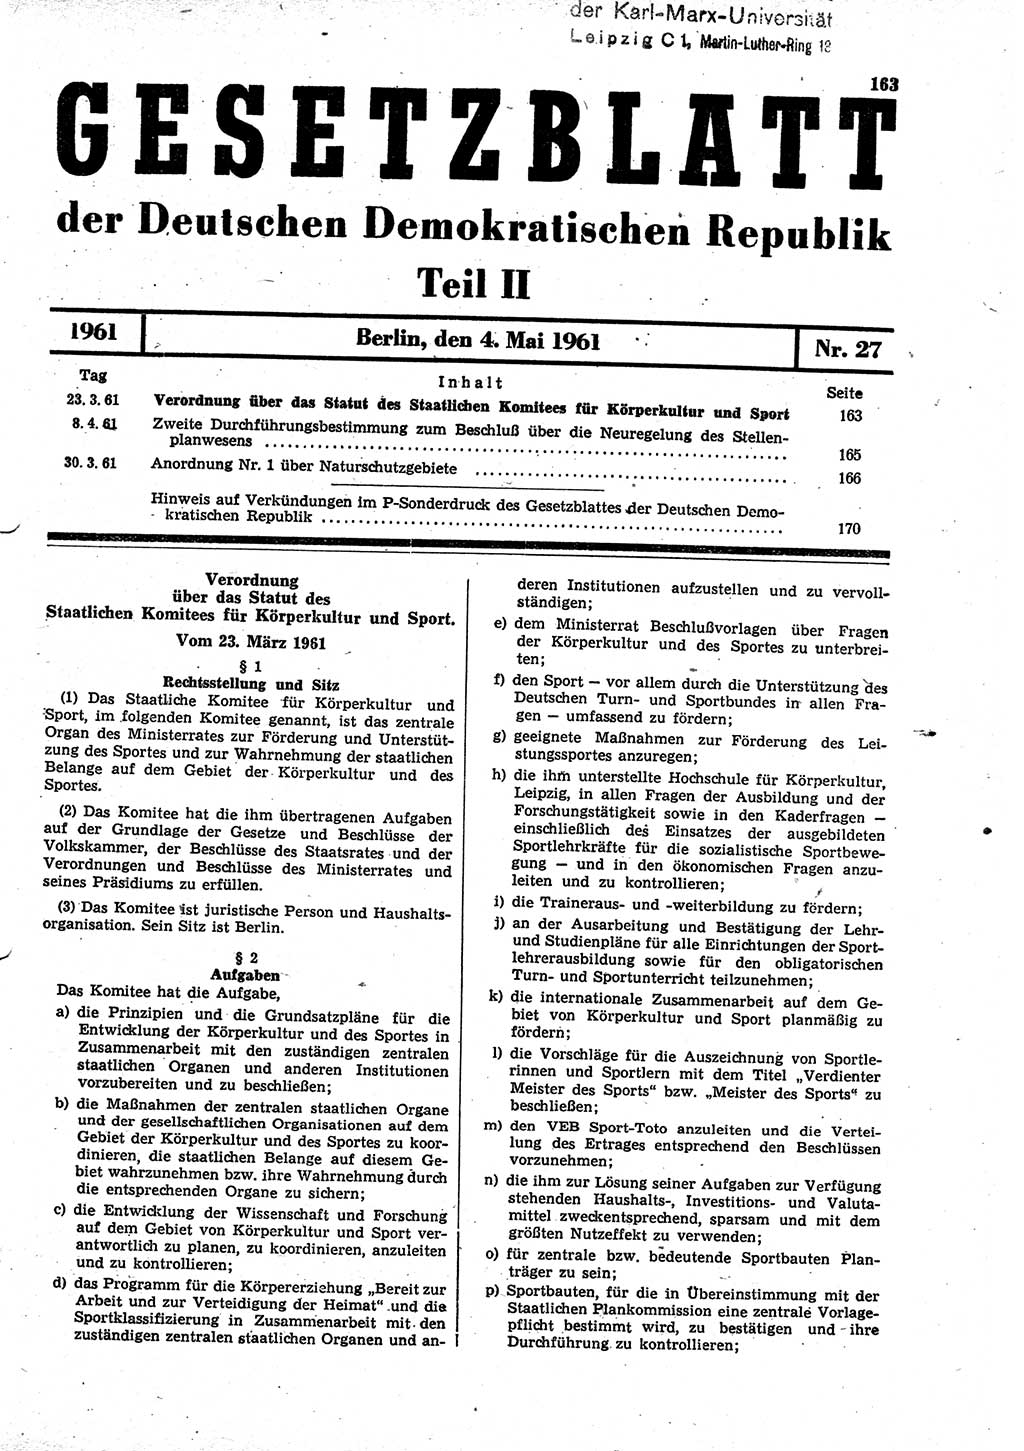 Gesetzblatt (GBl.) der Deutschen Demokratischen Republik (DDR) Teil ⅠⅠ 1961, Seite 163 (GBl. DDR ⅠⅠ 1961, S. 163)